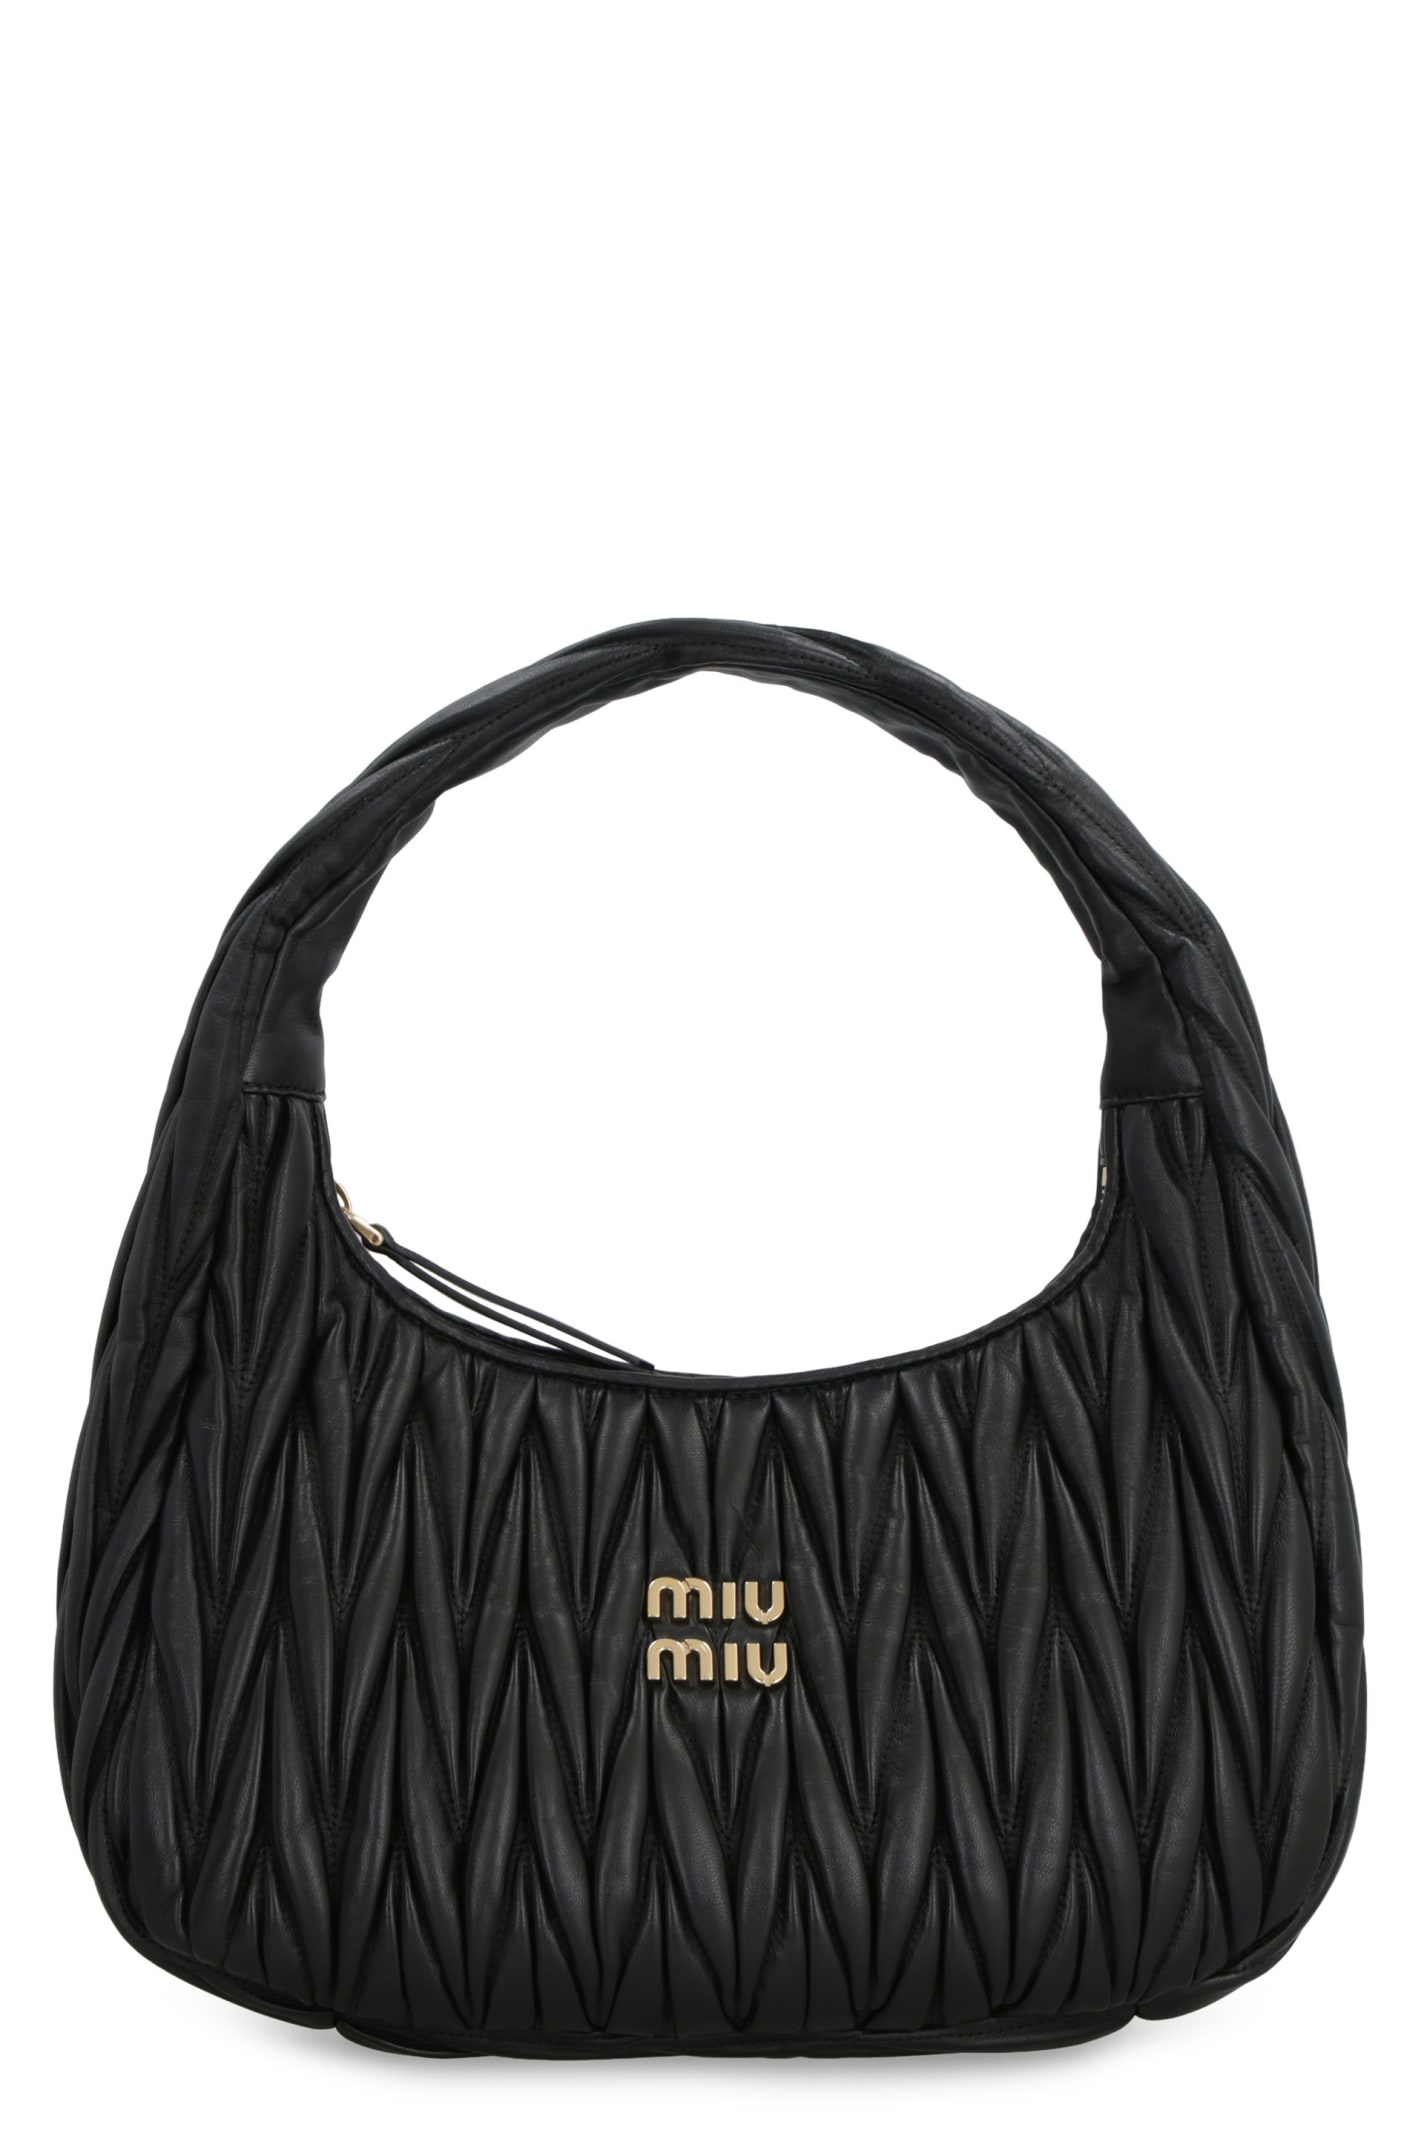 Miu Miu Wander Hobo Bag In Black